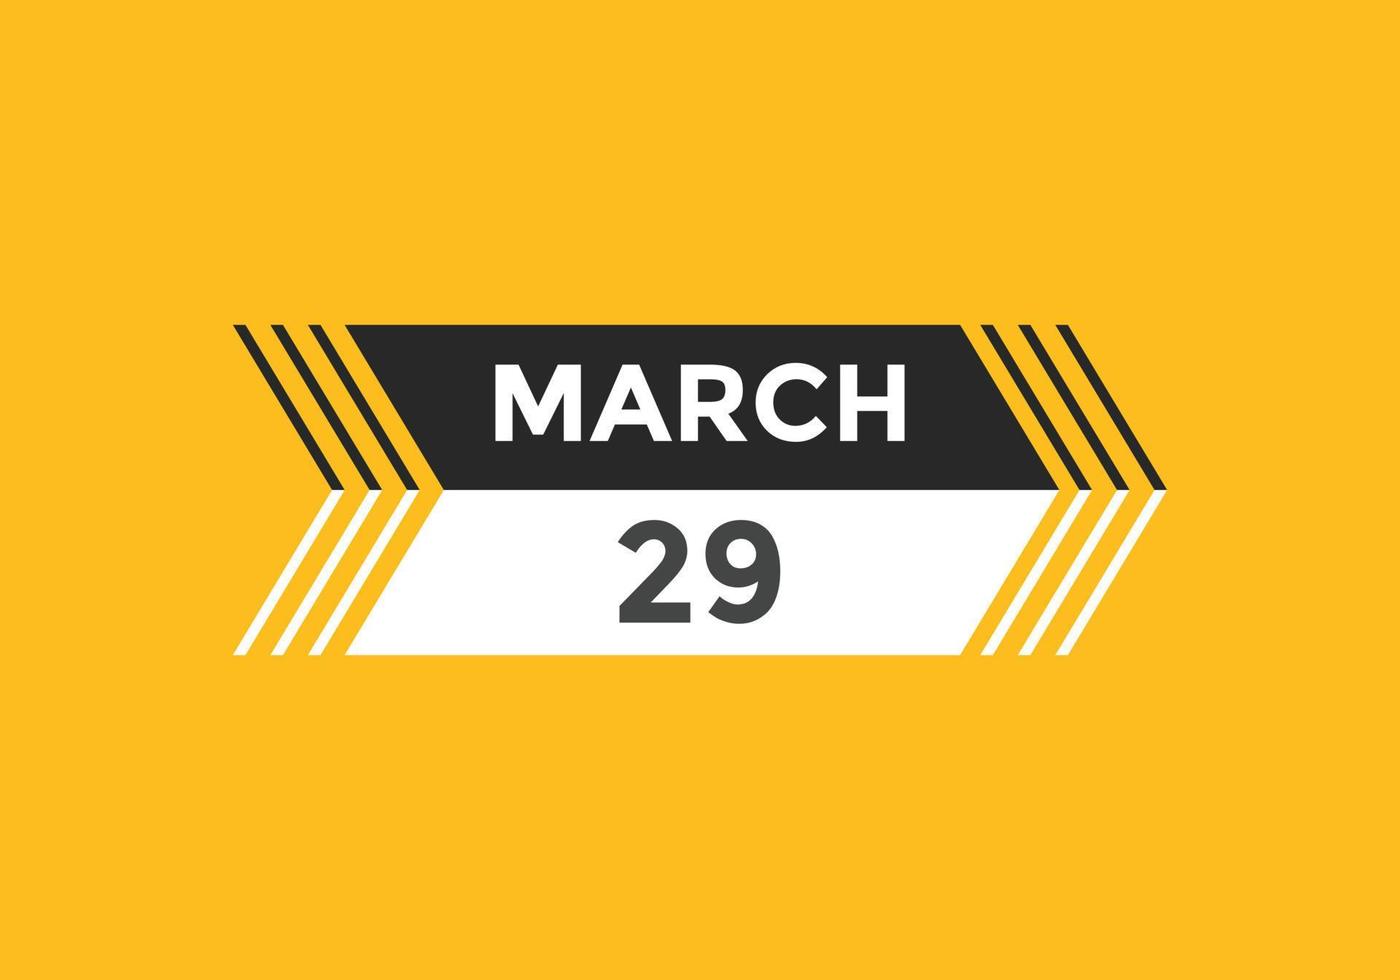 rappel du calendrier du 29 mars. Modèle d'icône de calendrier quotidien du 29 mars. modèle de conception d'icône calendrier 29 mars. illustration vectorielle vecteur